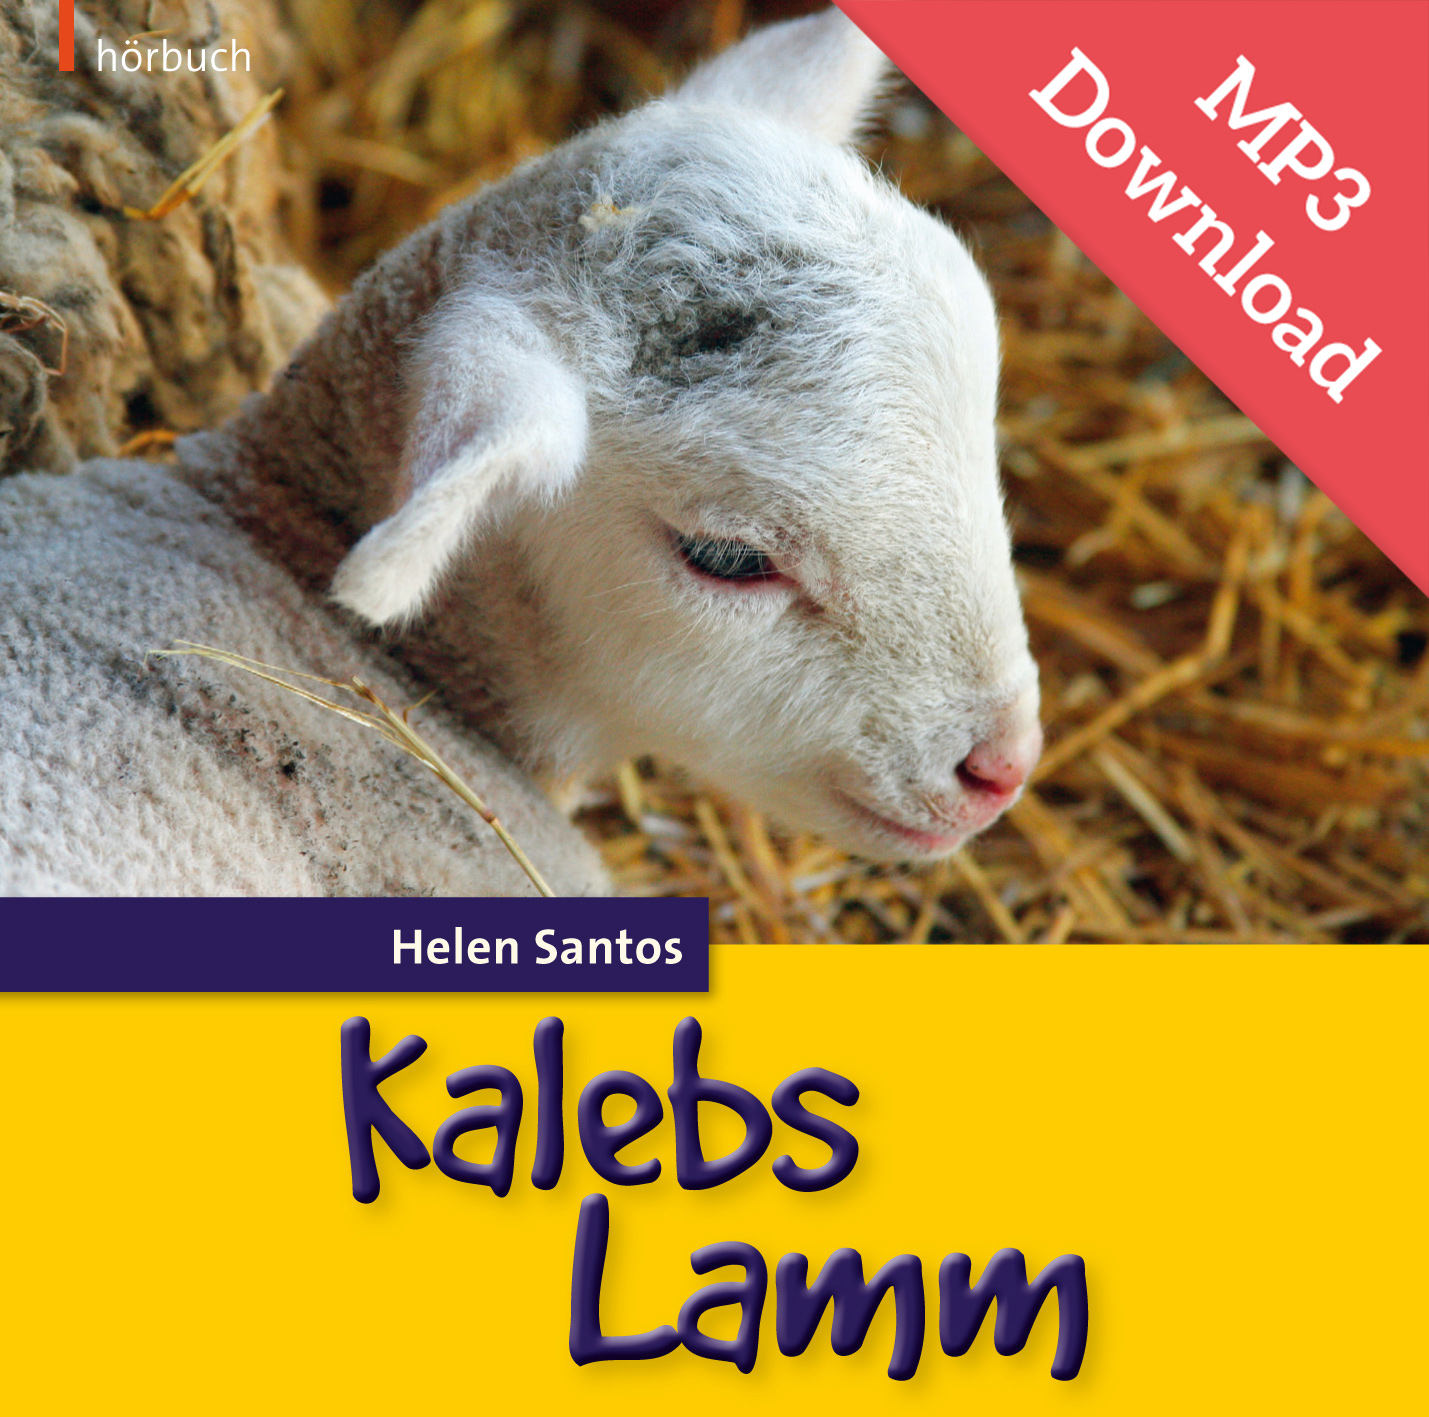 DOWNLOAD: Kalebs Lamm (Hörbuch [MP3])